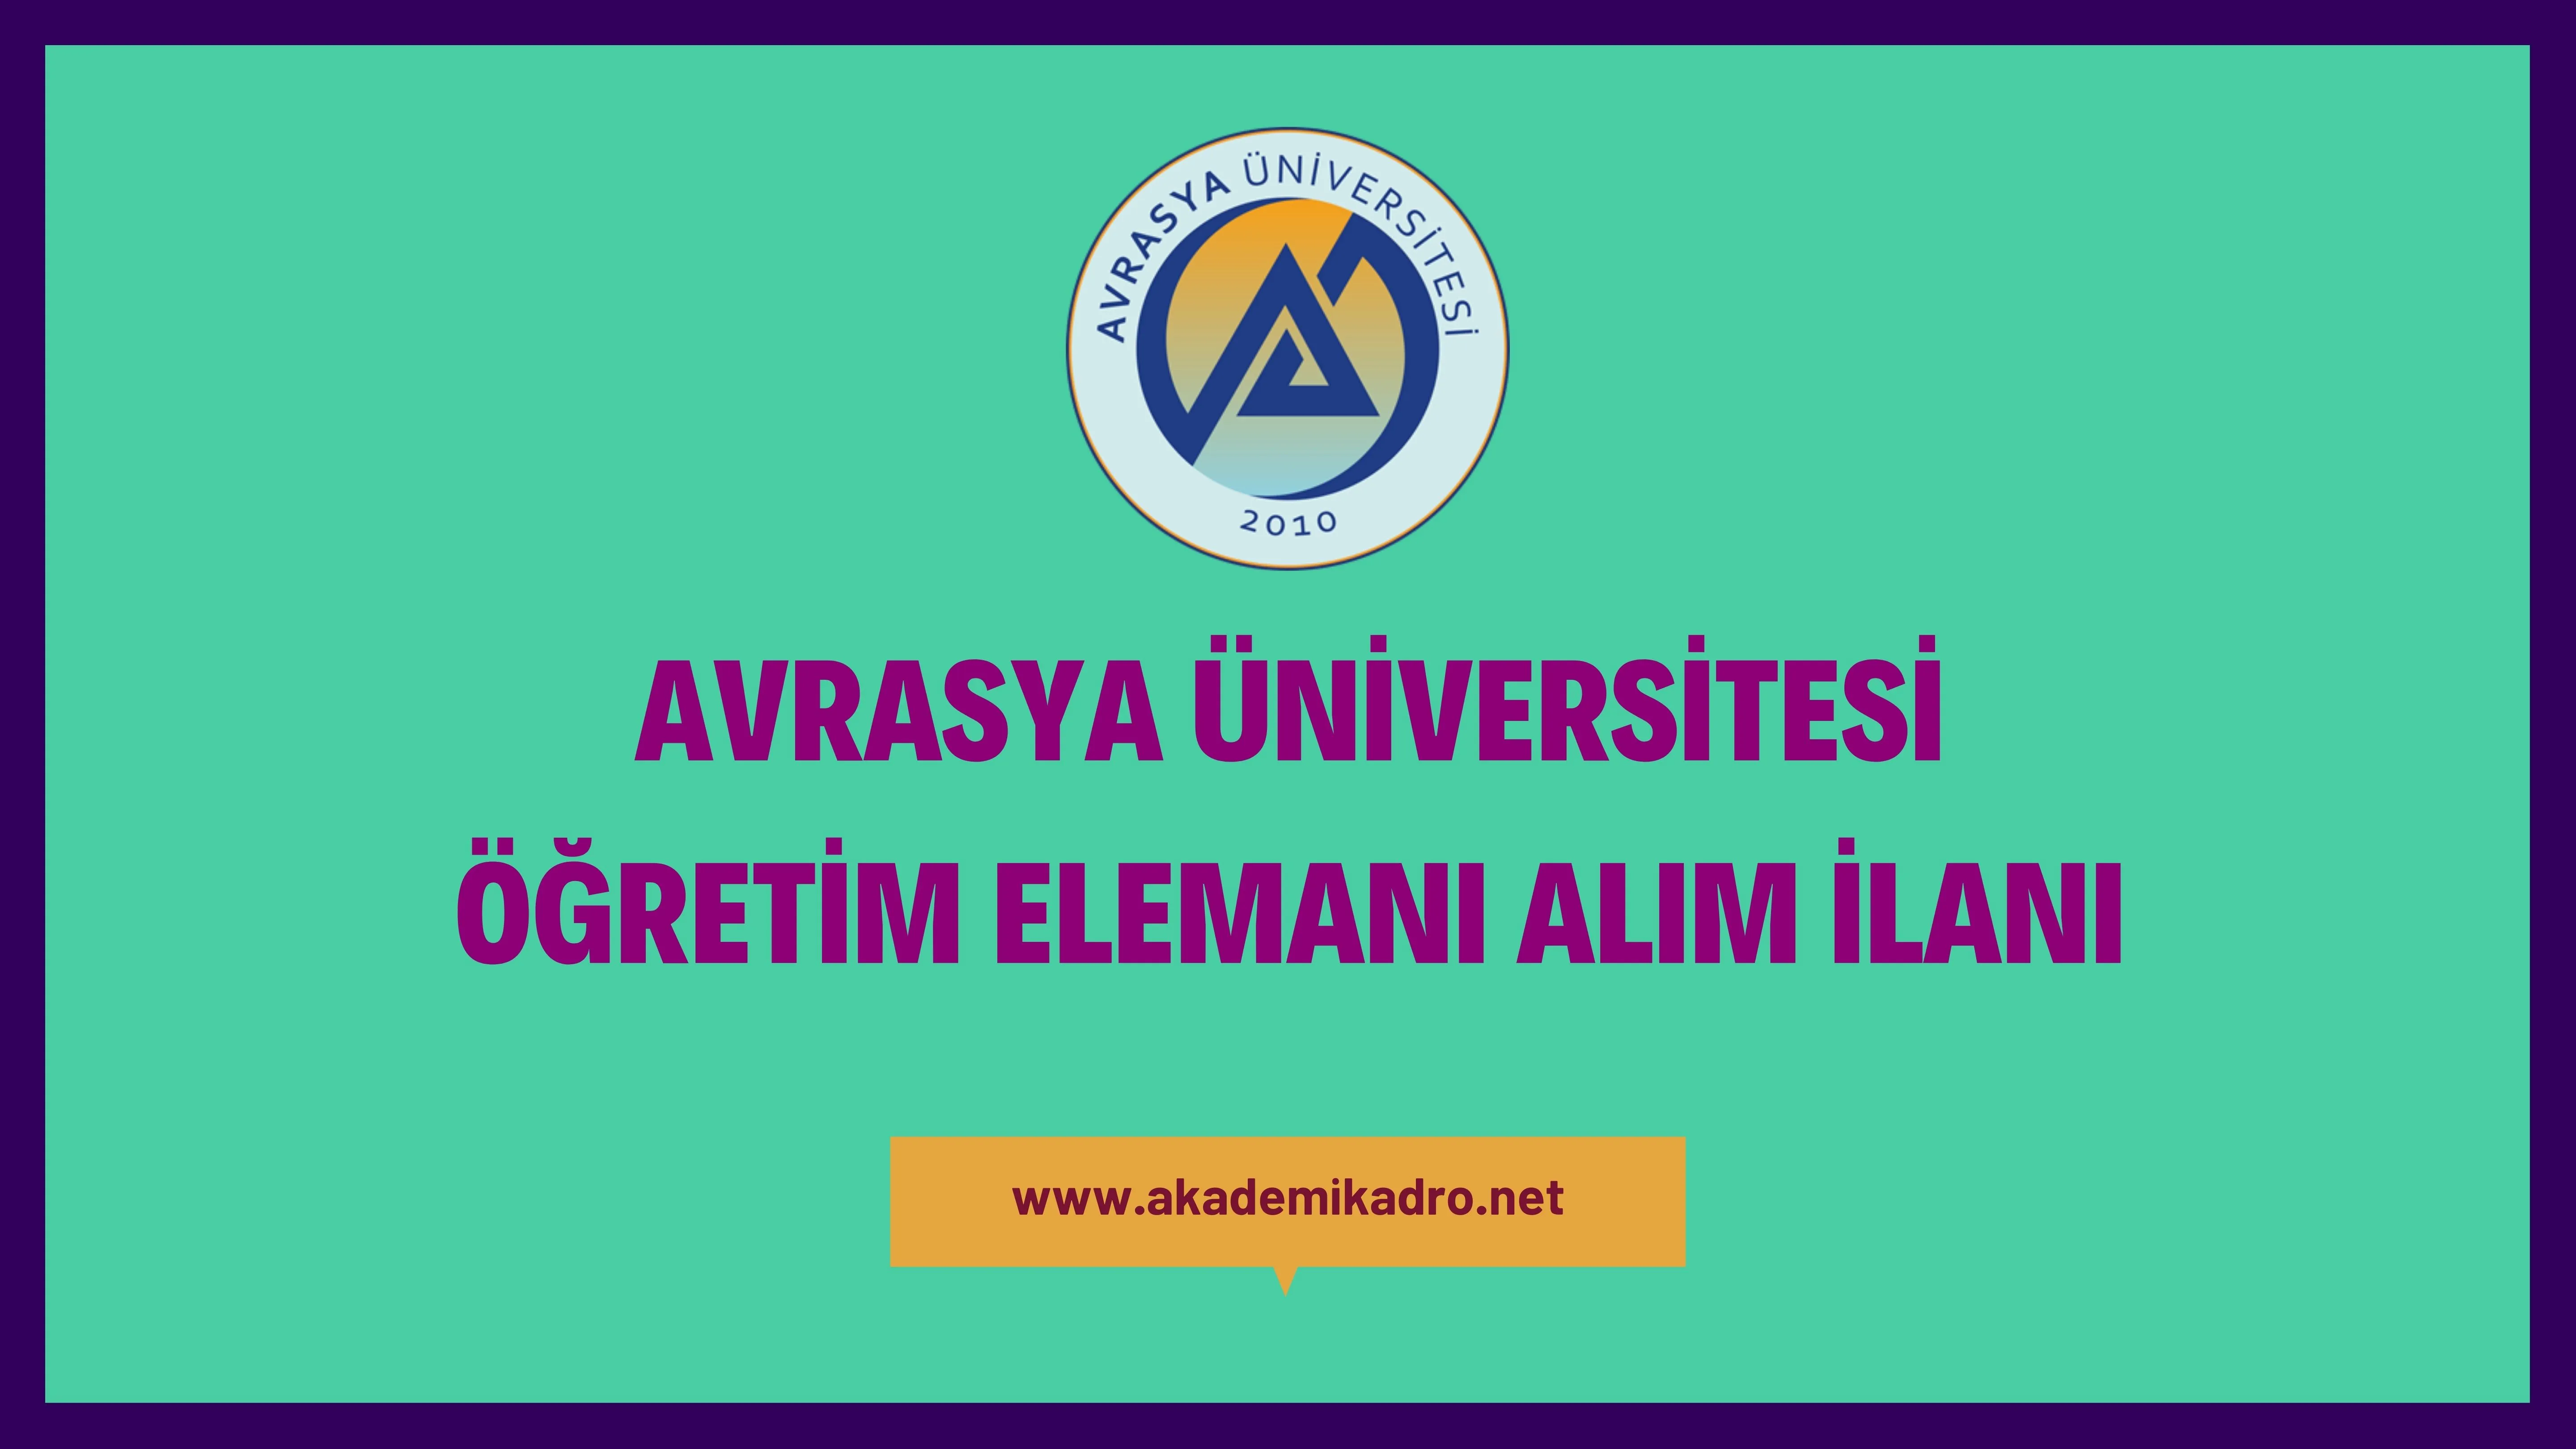 Avrasya Üniversitesi 110 Öğretim Üyesi, 19 Öğretim Görevlisi ve 8 Araştırma görevlisi alacaktır.